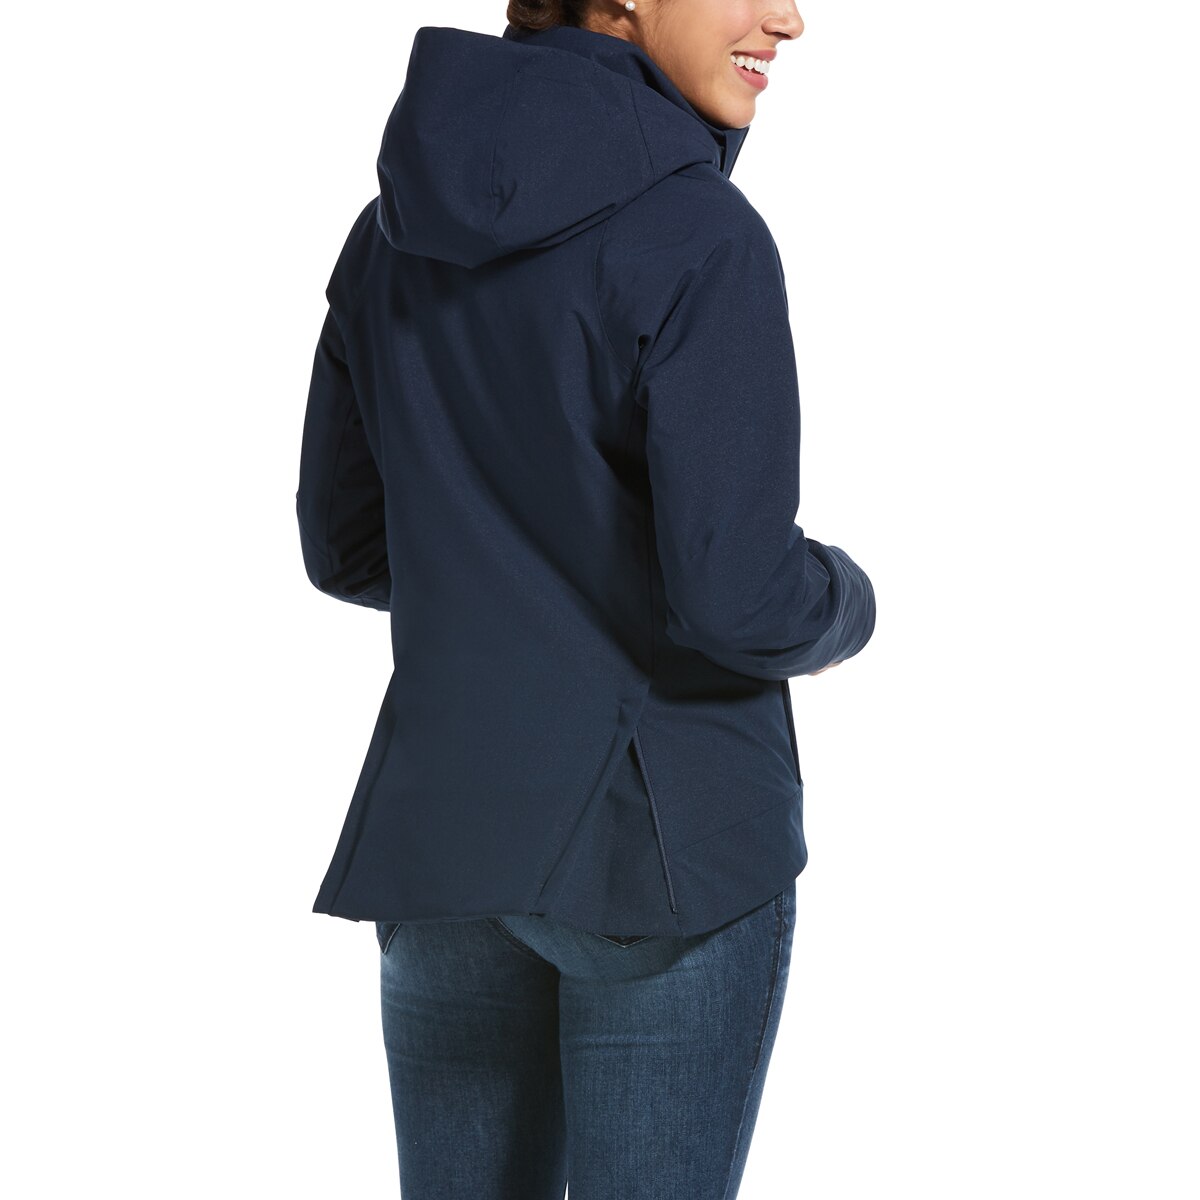 Ariat Womens Waterproof Stable Jacket Navy Blue